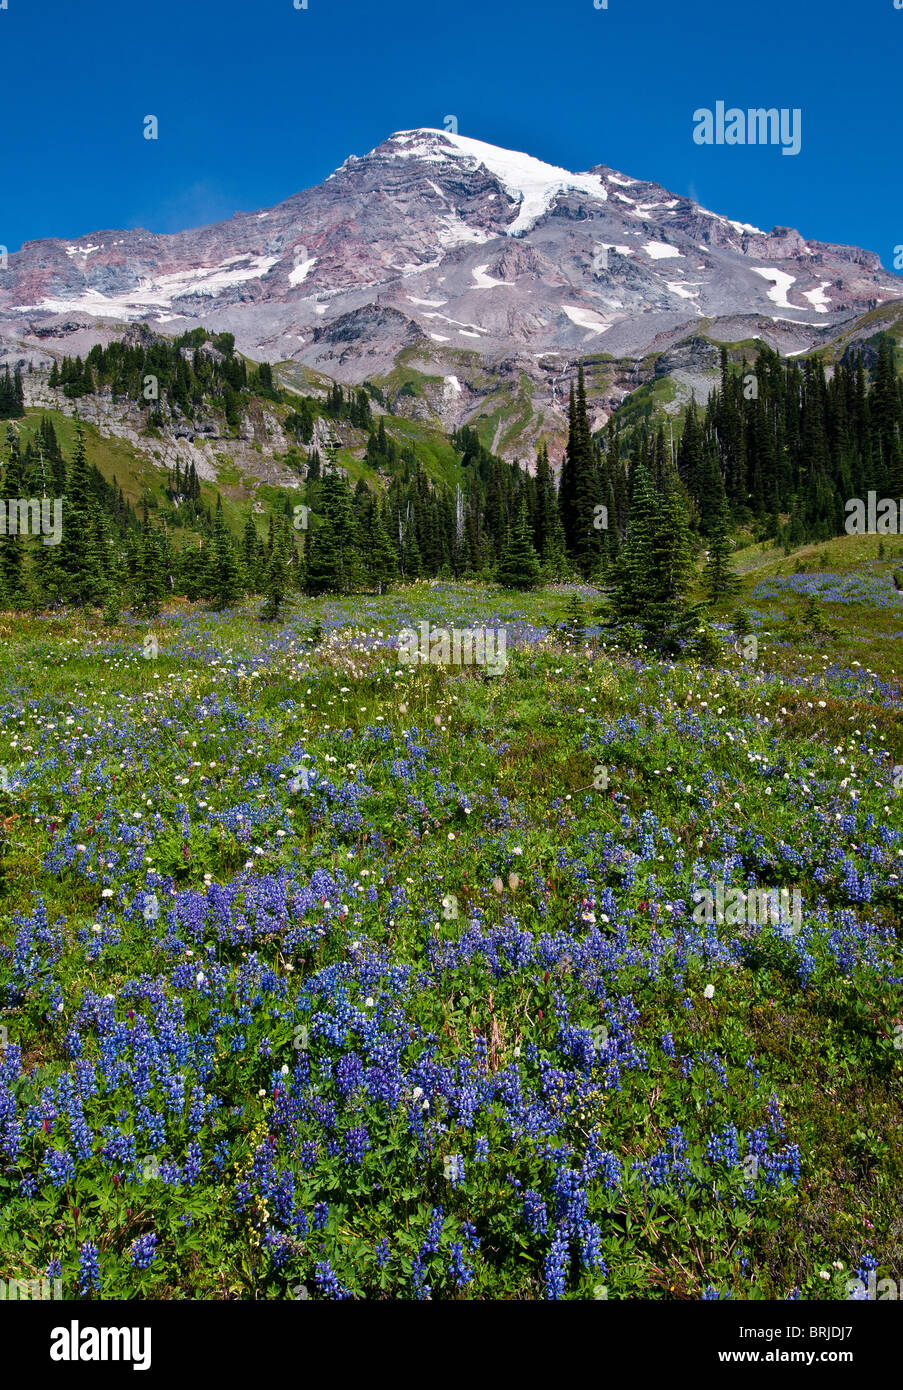 Le mont Rainier et fleurs sauvages dans la prairie à Van Trump Park ; Mount Rainier National Park, Washington. Banque D'Images